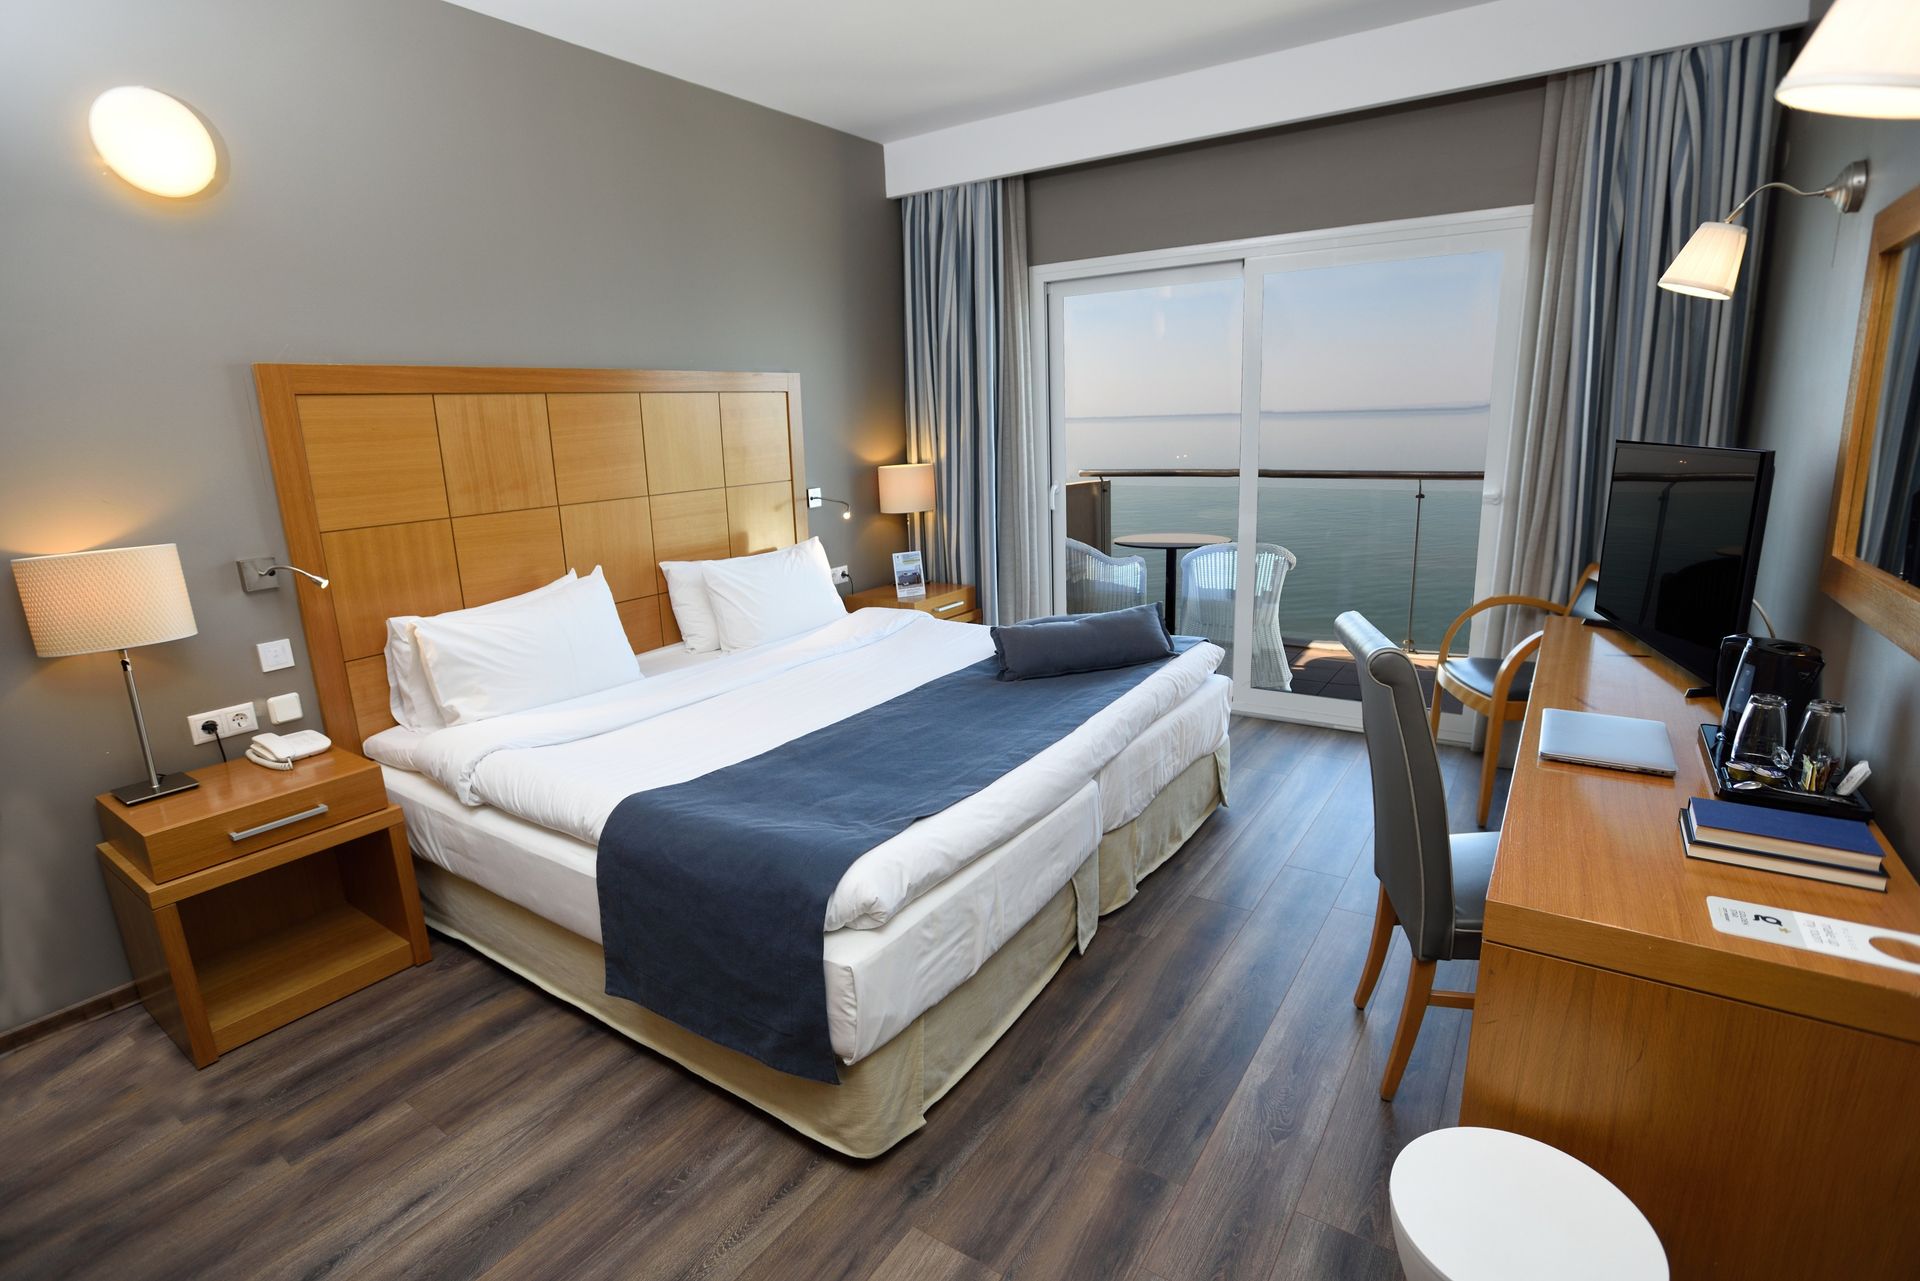 4* Golden Star City Resort - Θεσσαλονίκη ✦ 2 Ημέρες